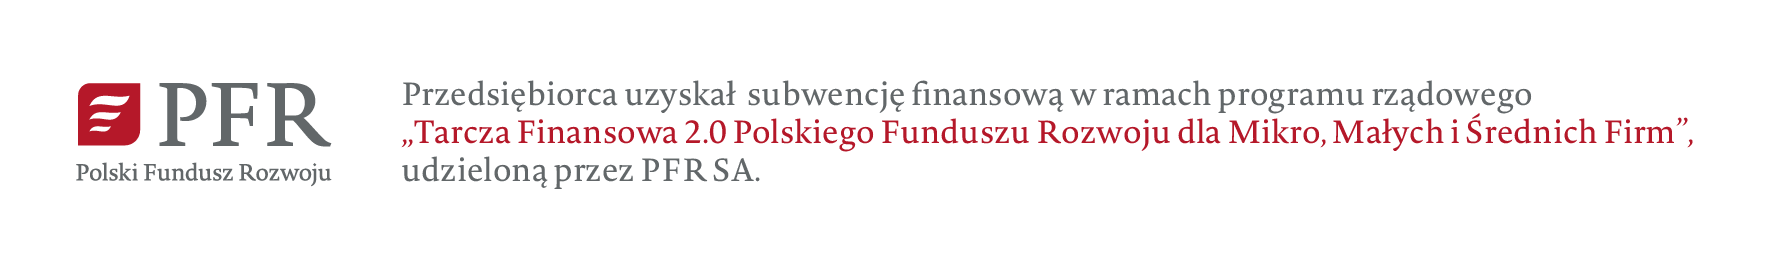 Polski Fundusz Rozwoju, logo